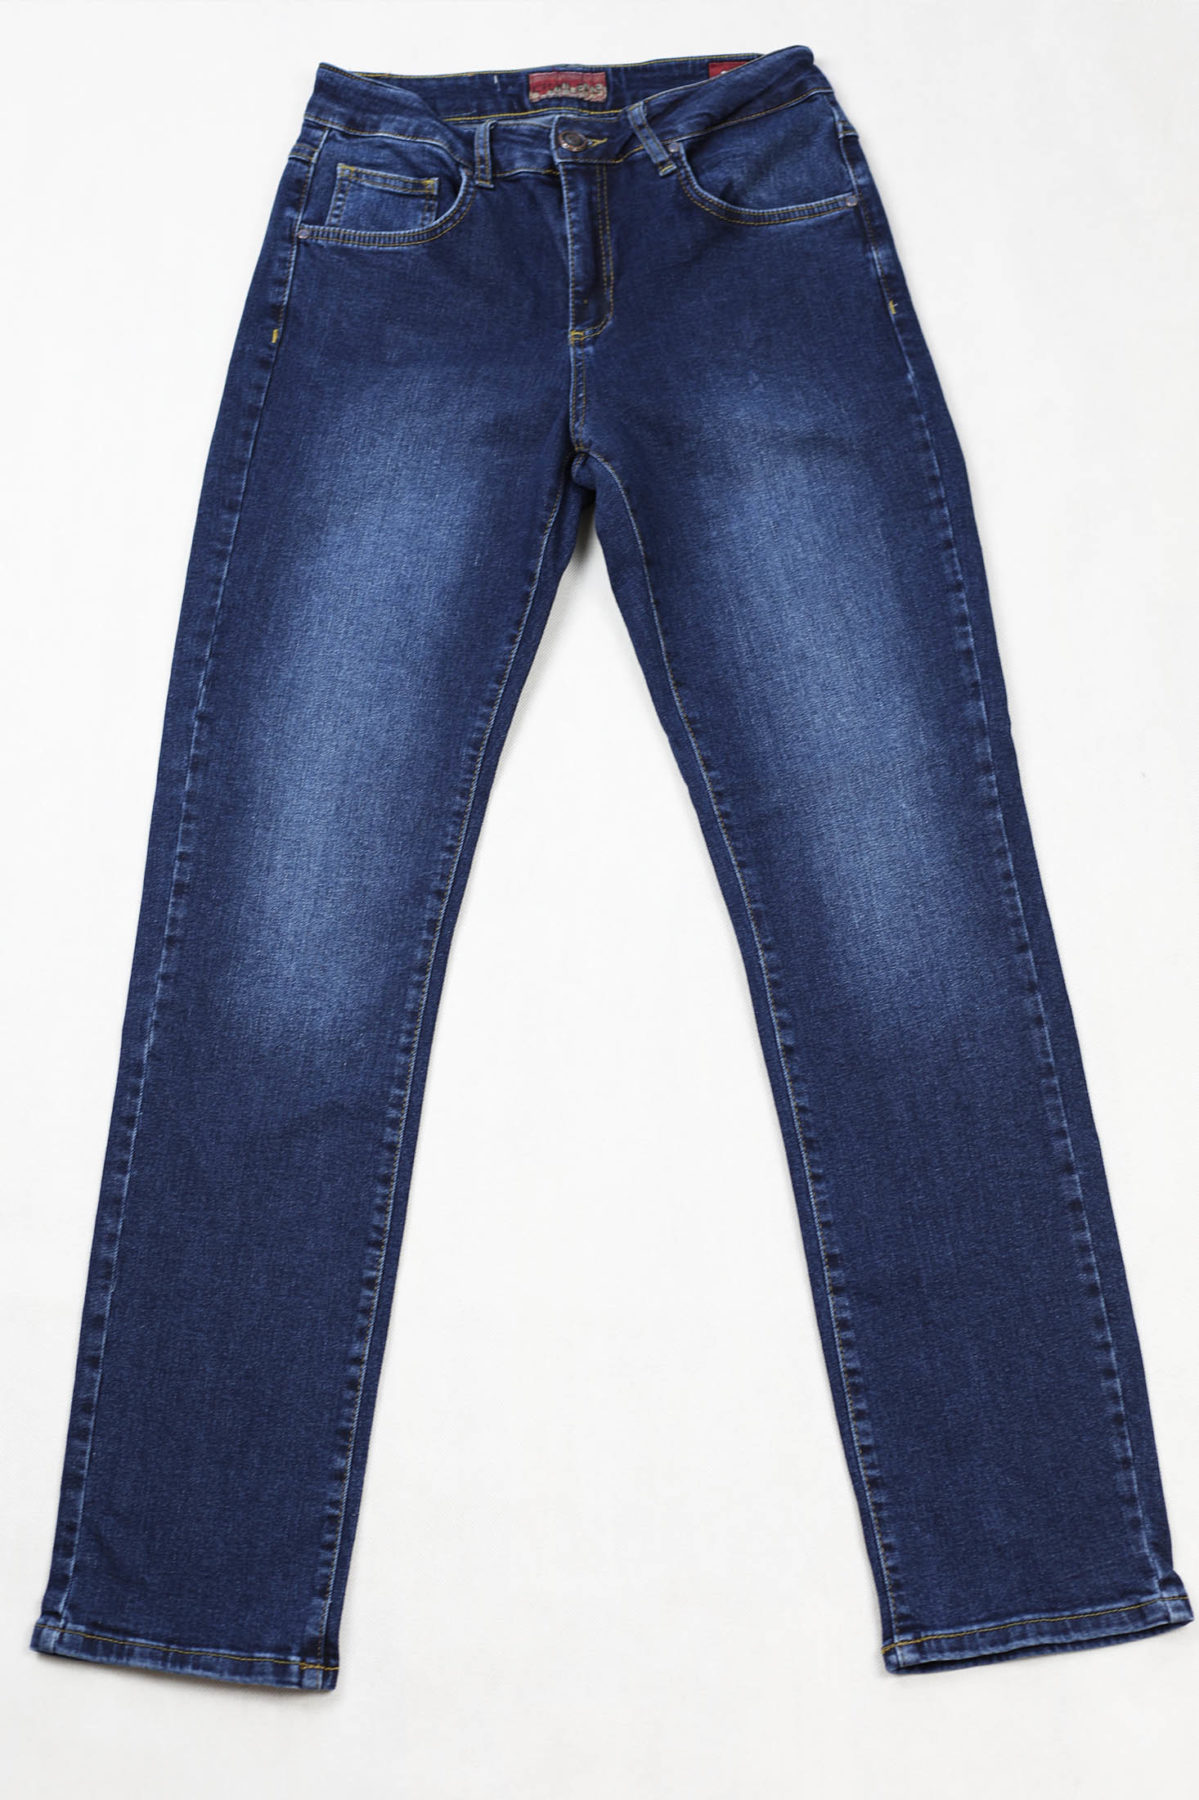 Damskie jeansy stretch, ciemnoniebieskie, z lekkimi przetarciami, nogawka prosta.